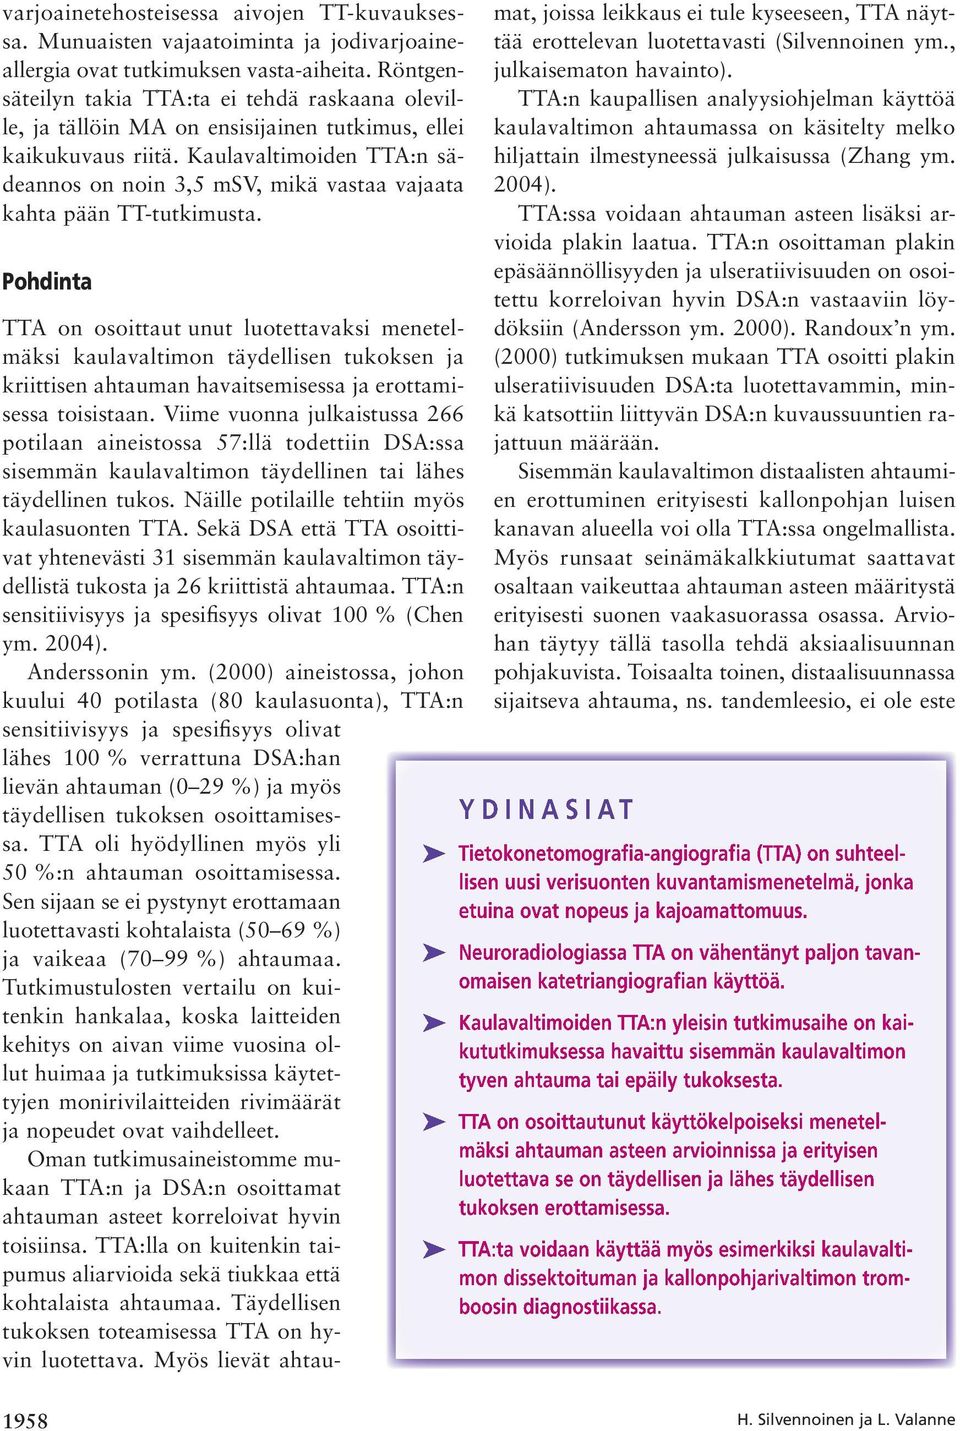 Kaulavaltimoiden TTA:n sädeannos on noin 3,5 msv, mikä vastaa vajaata kahta pään TT-tutkimusta.